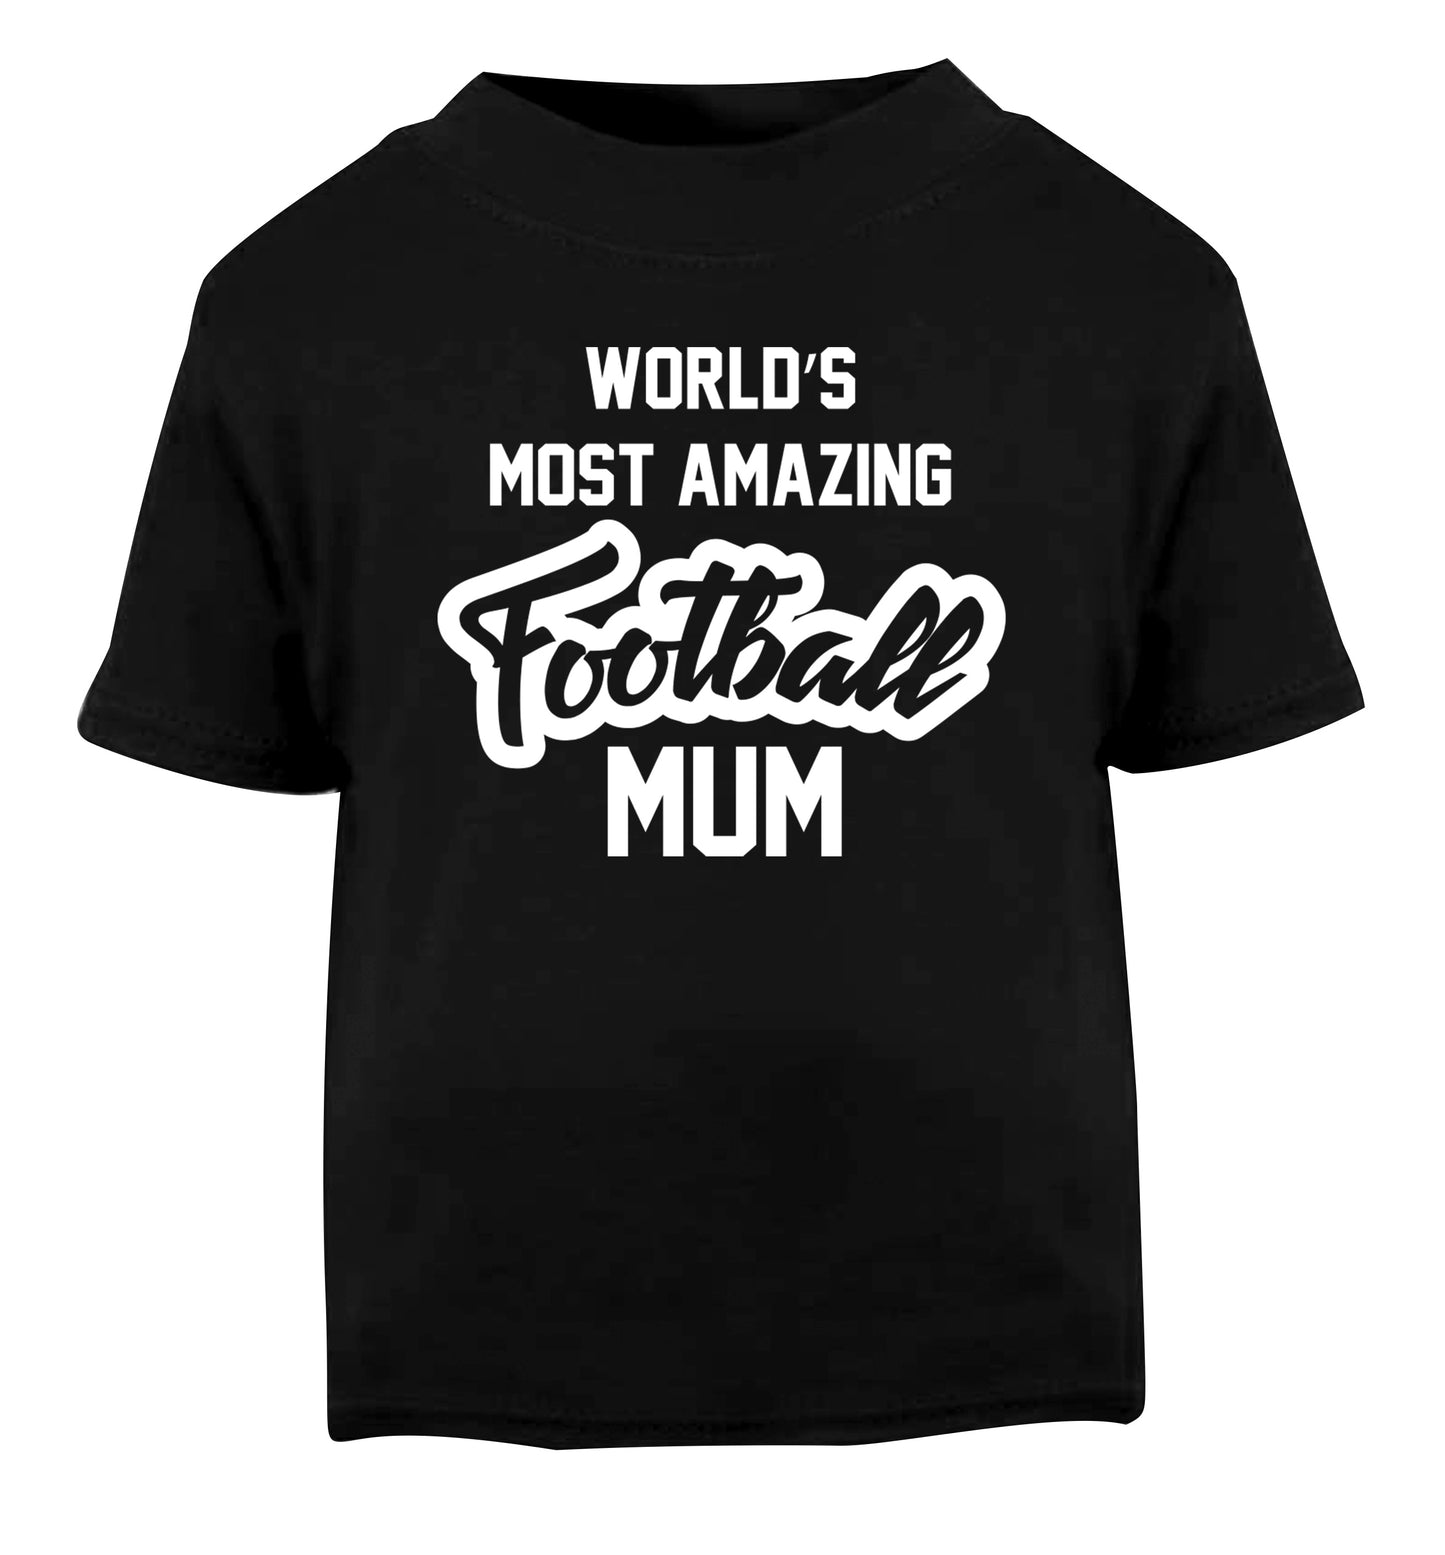 Worlds most amazing football mum Black Baby Toddler Tshirt 2 years